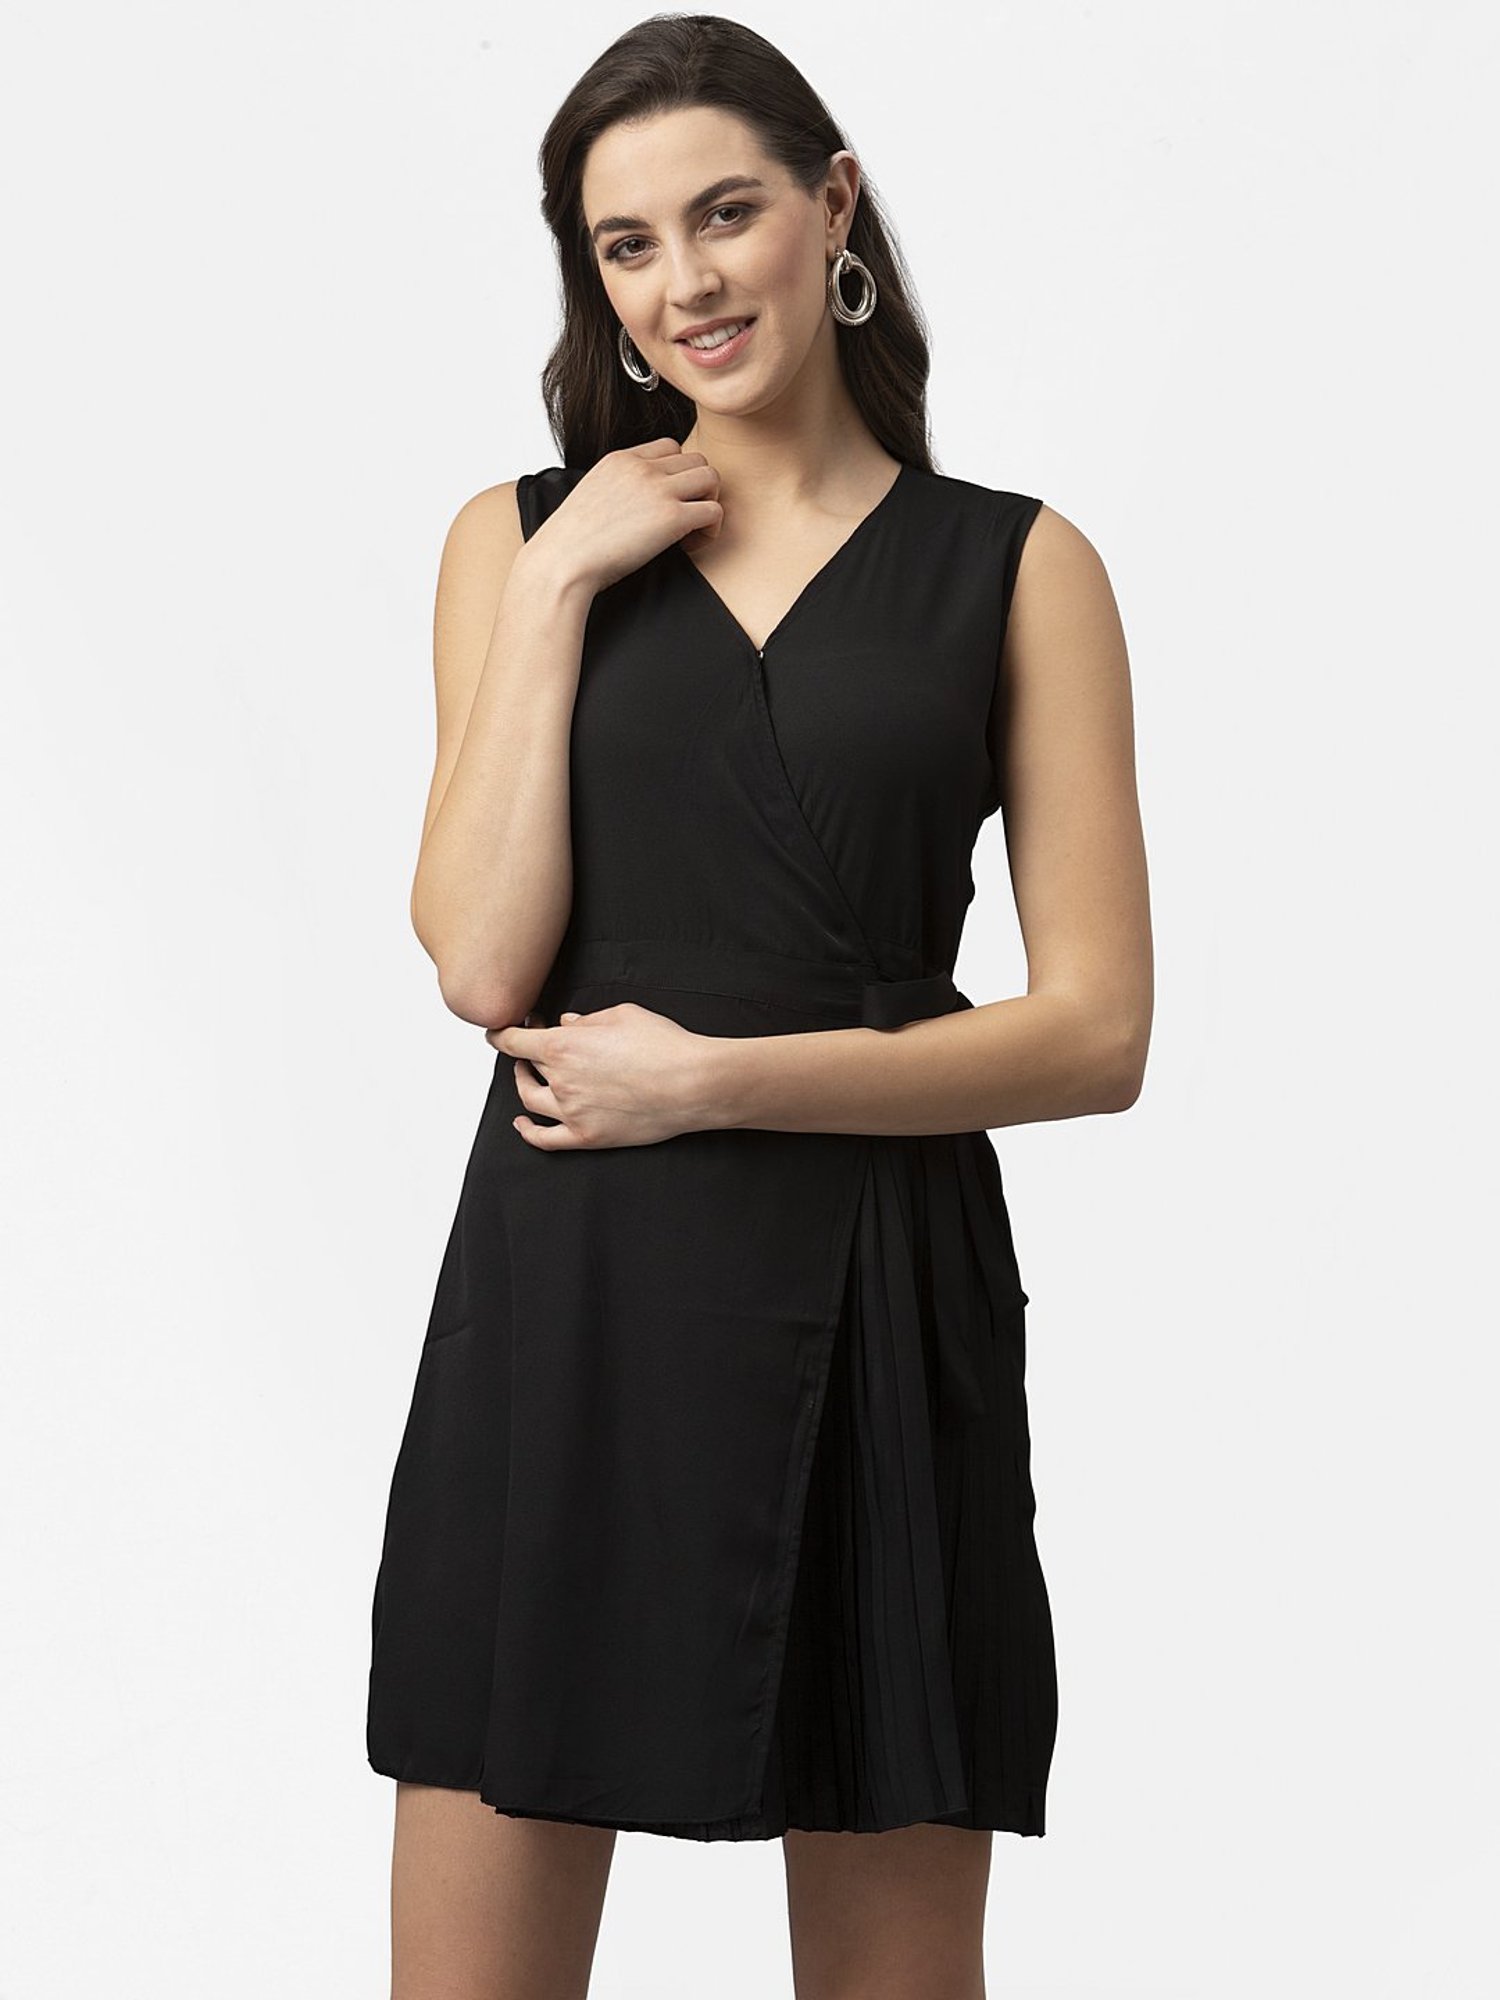 Jovani Dress 37016 | Black V Neck Short Fit and Flare Dress